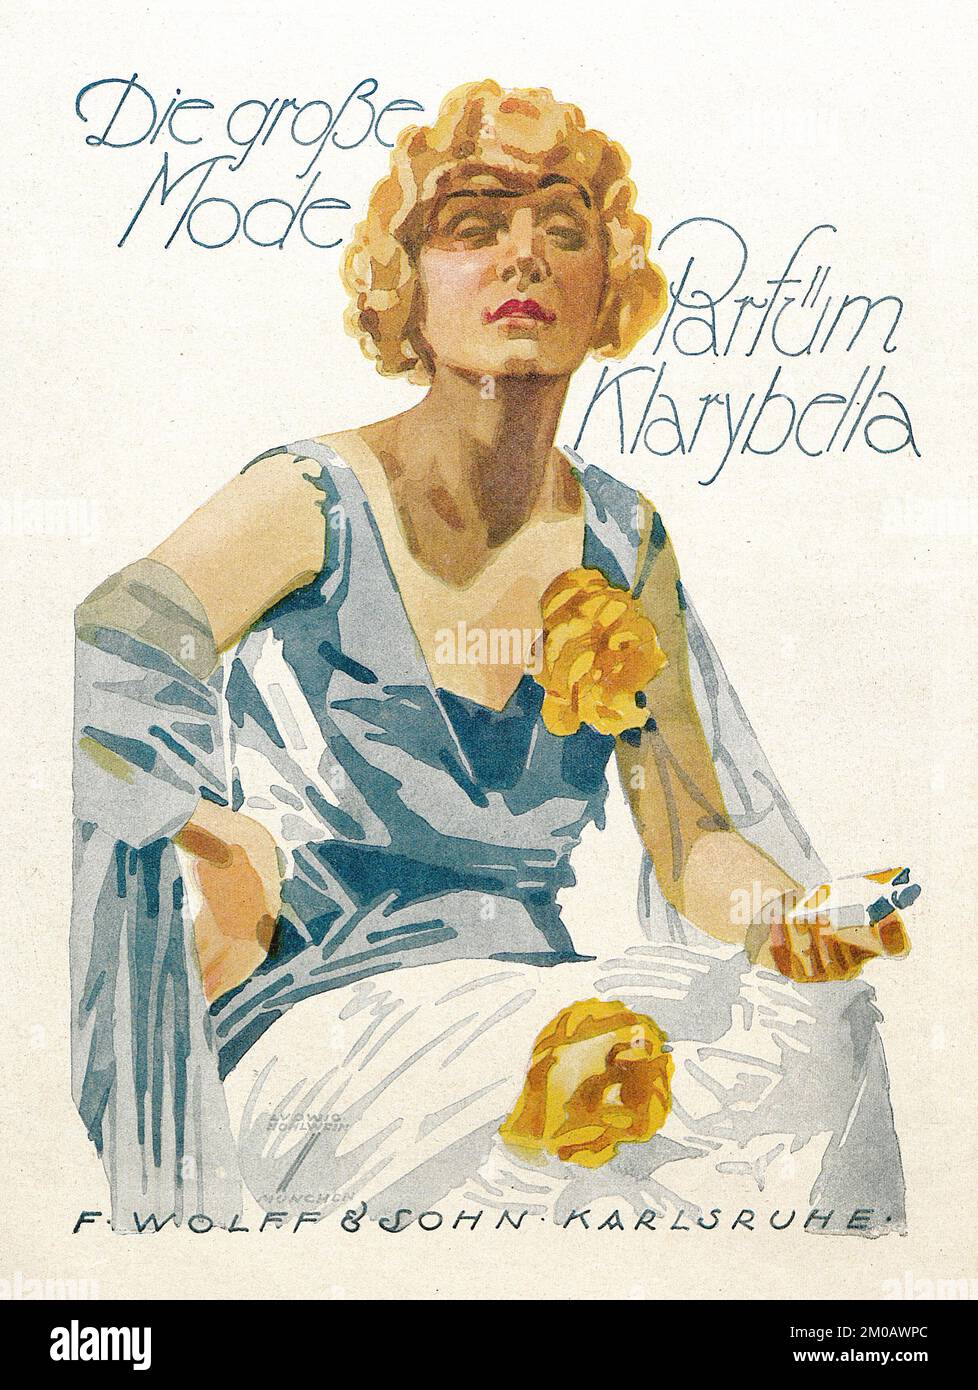 Affiche publicitaire allemande de Ludwig Hohlwein - Parfüm Klarybella, 1924 Banque D'Images